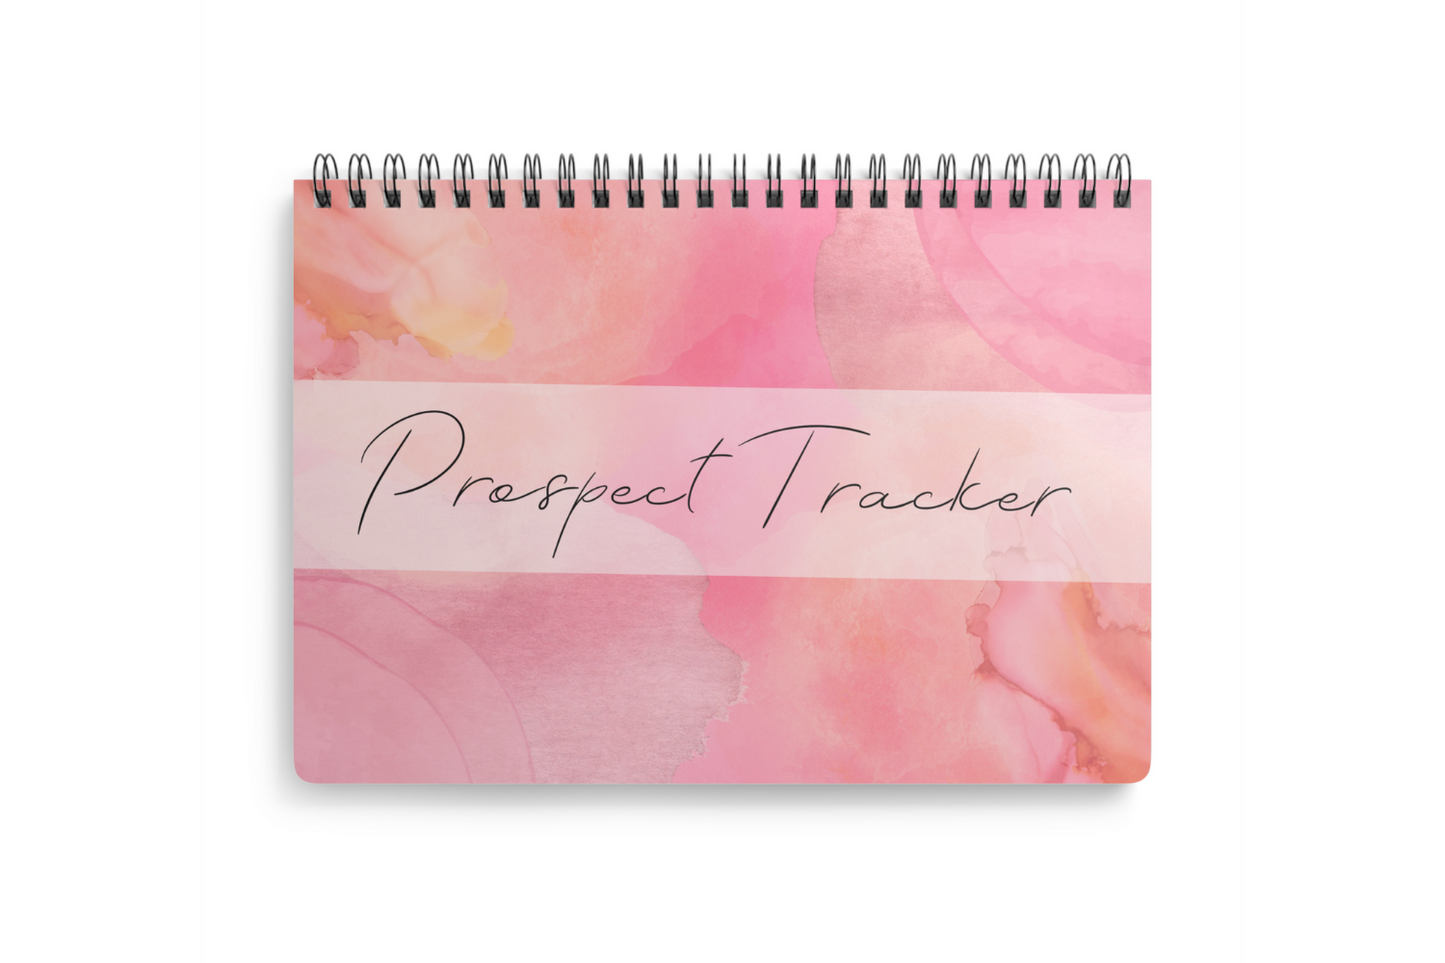 Prospect Tracker